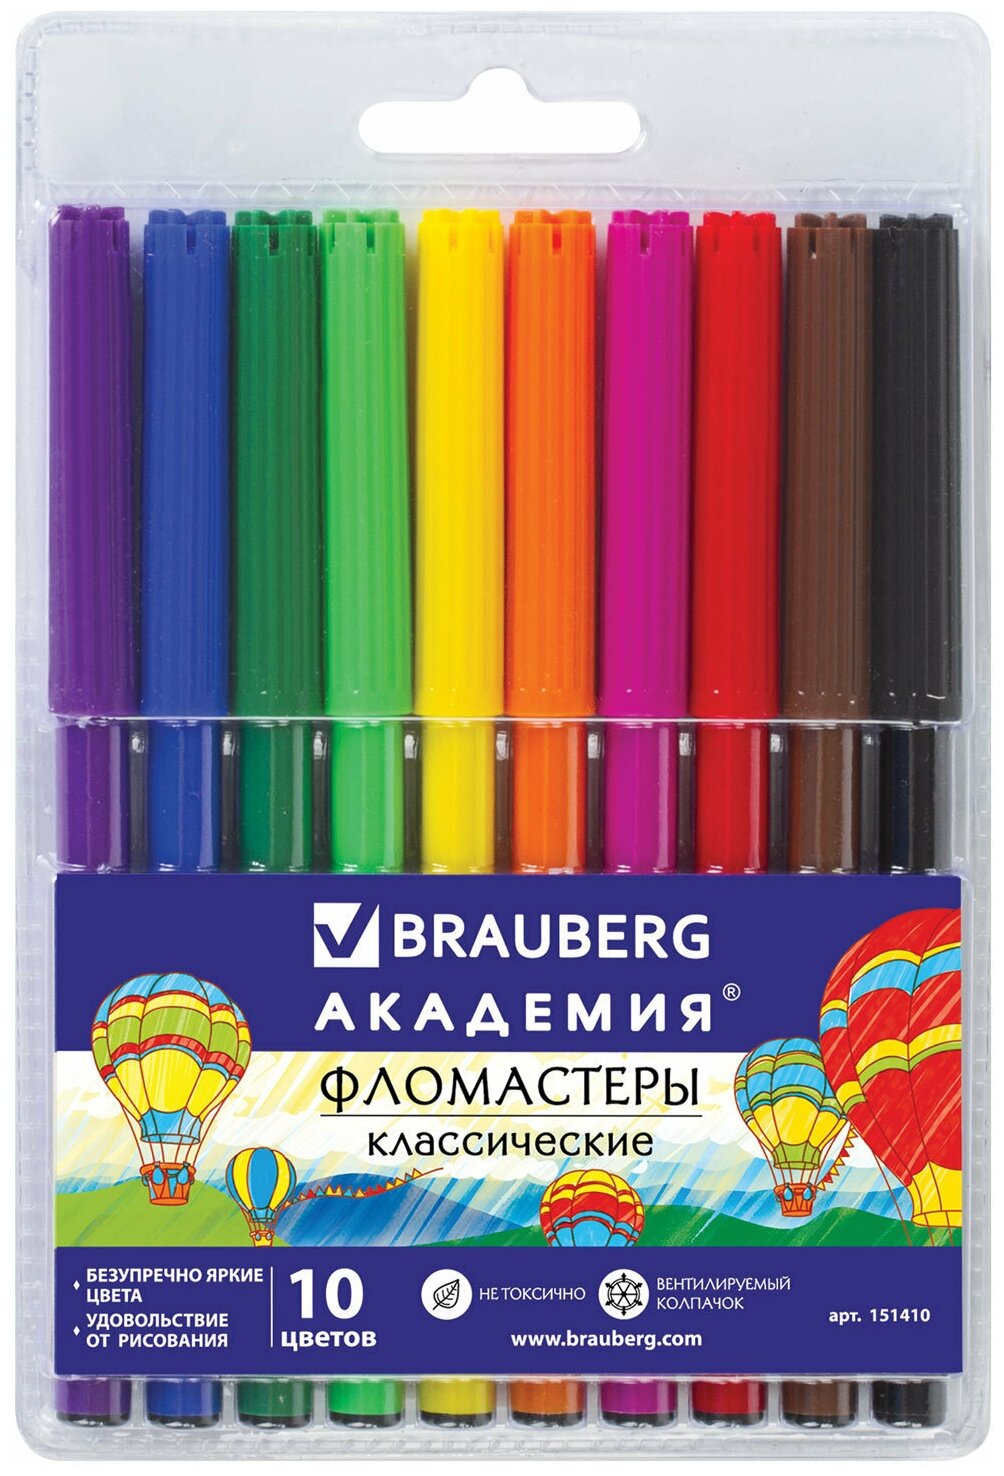 Фломастеры BRAUBERG "академия", 10 цветов, вентилируемый колпачок, ПВХ упаковка, 151410